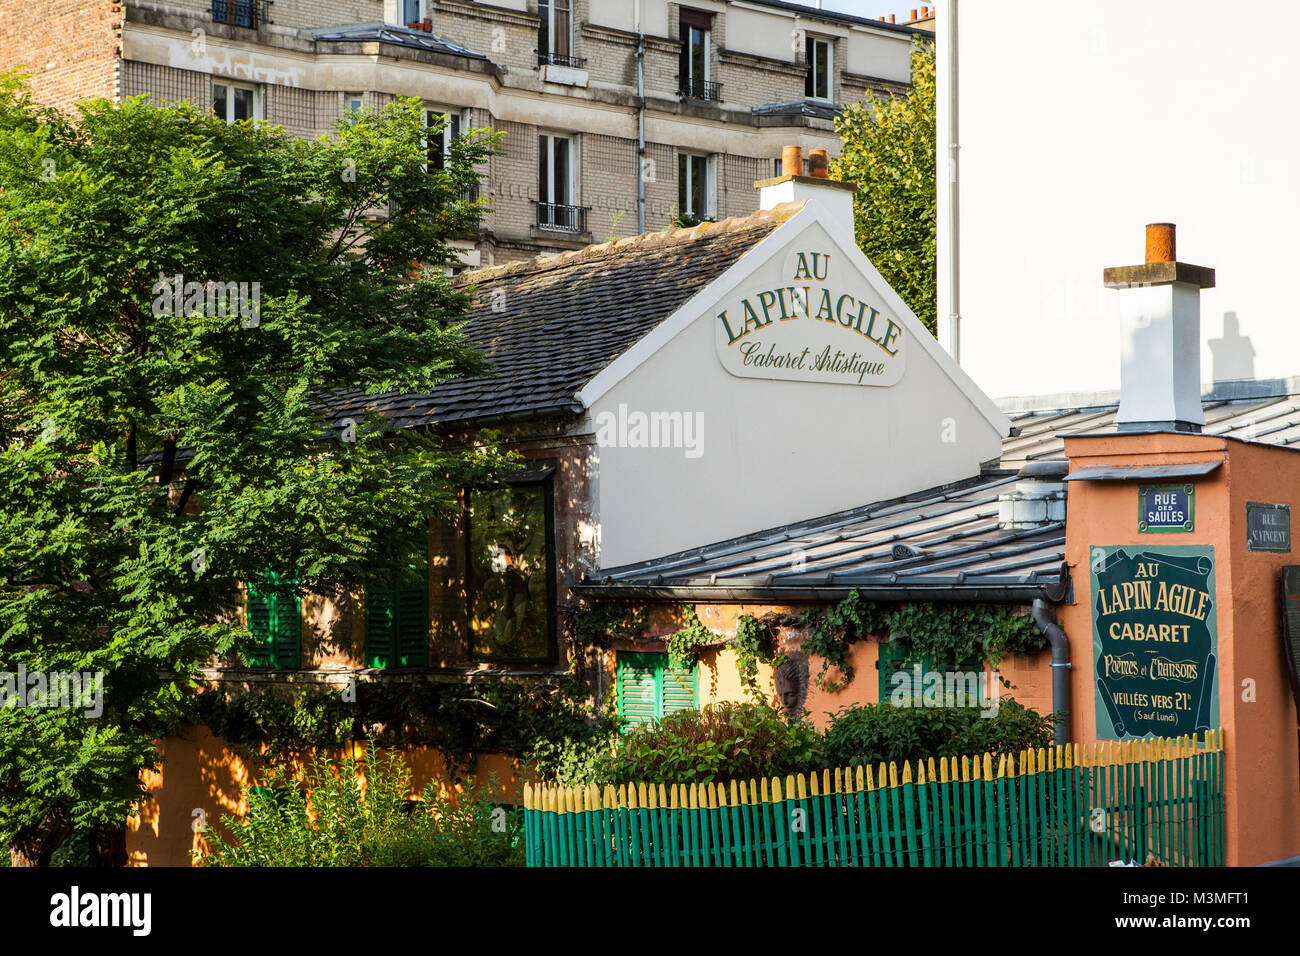 PARIS, FRANCE - JUILLET13,2014 : Lapin Agile cabaret club à Montmartre, Paris était populaire auprès des résidents de Montmartre dont les proxénètes, les personnes les plus pauvres, studen Banque D'Images